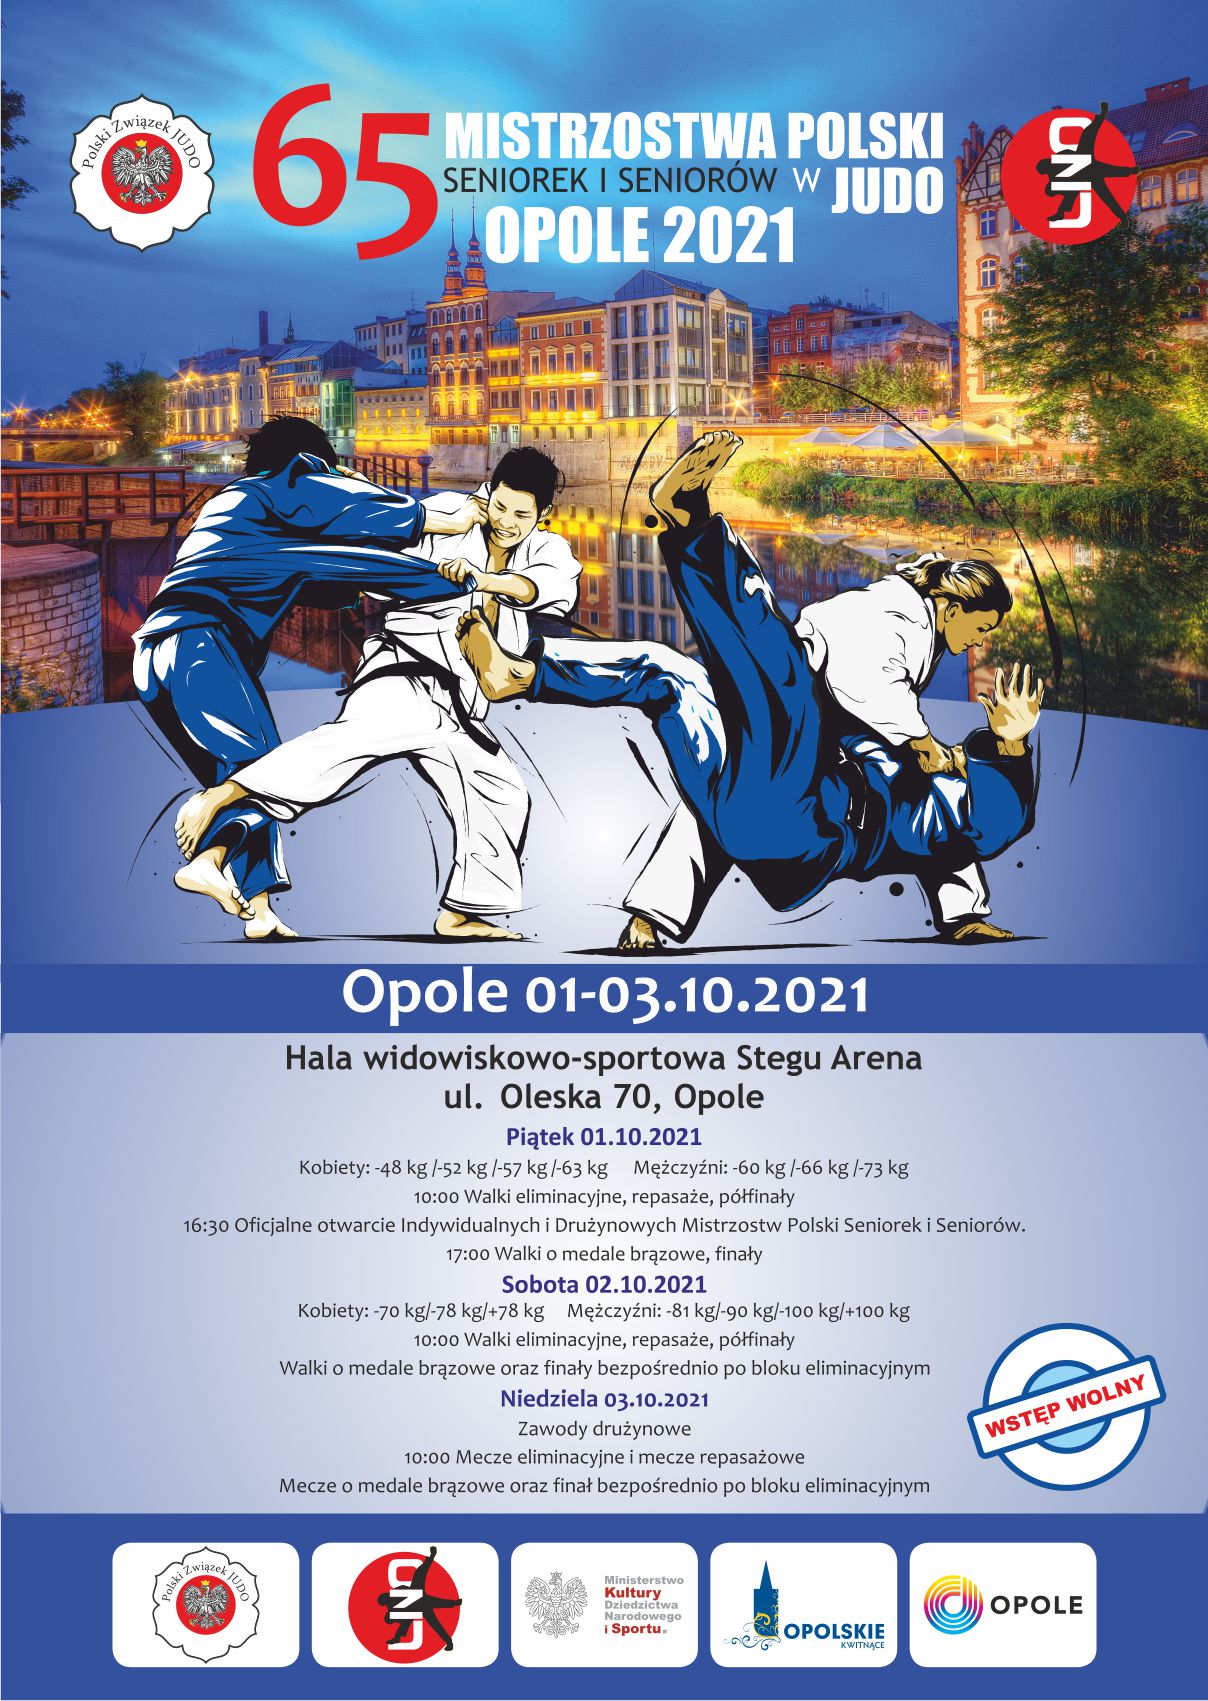 Mistrzostwa Polski Seniorek i Seniorów w Judo odbędą się w Opolu